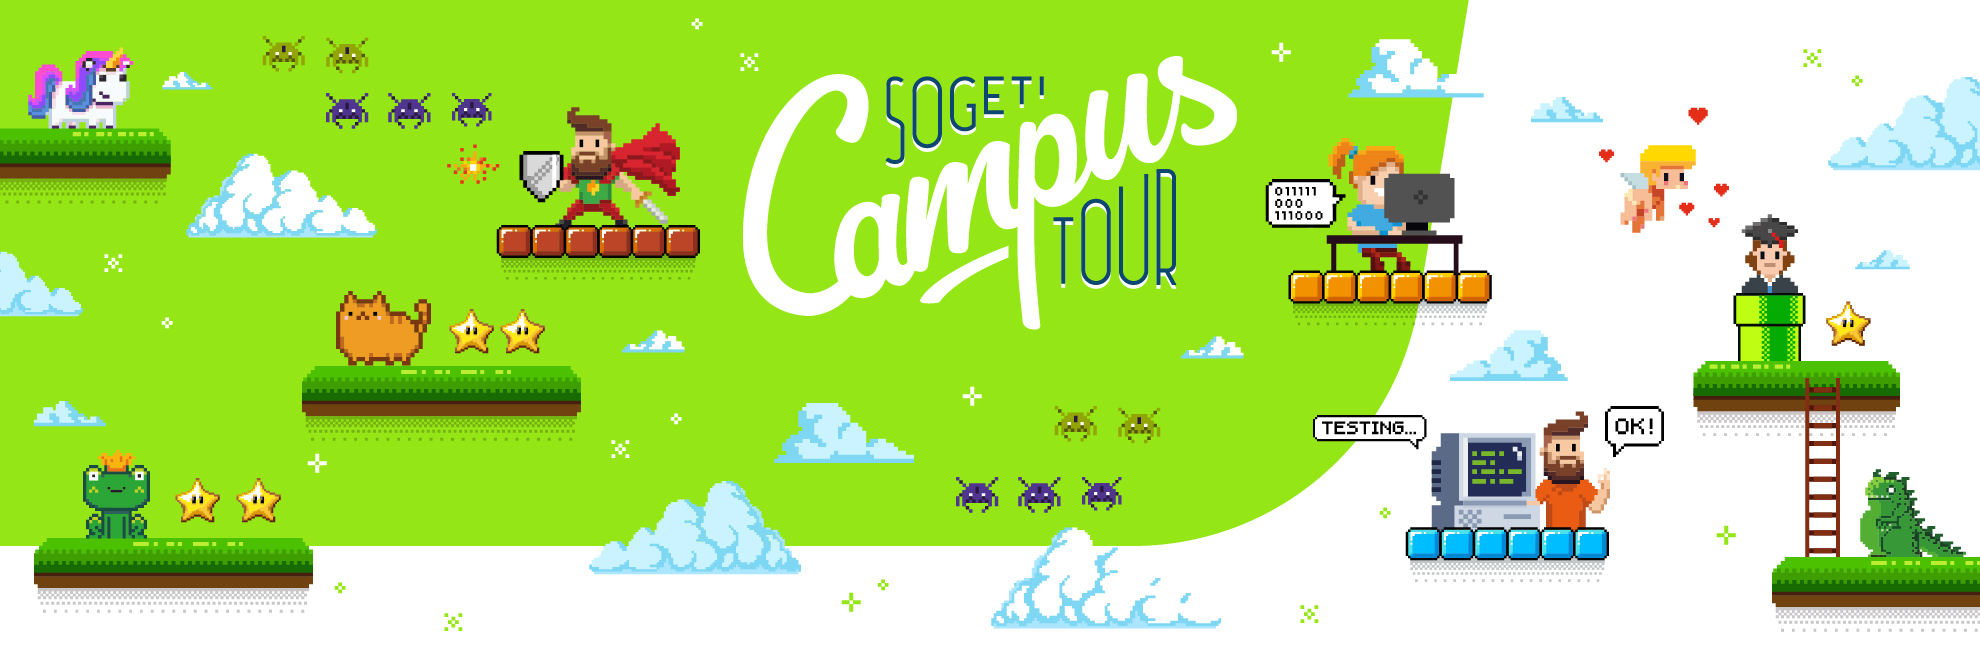 Sogeti Campus Tour 2018